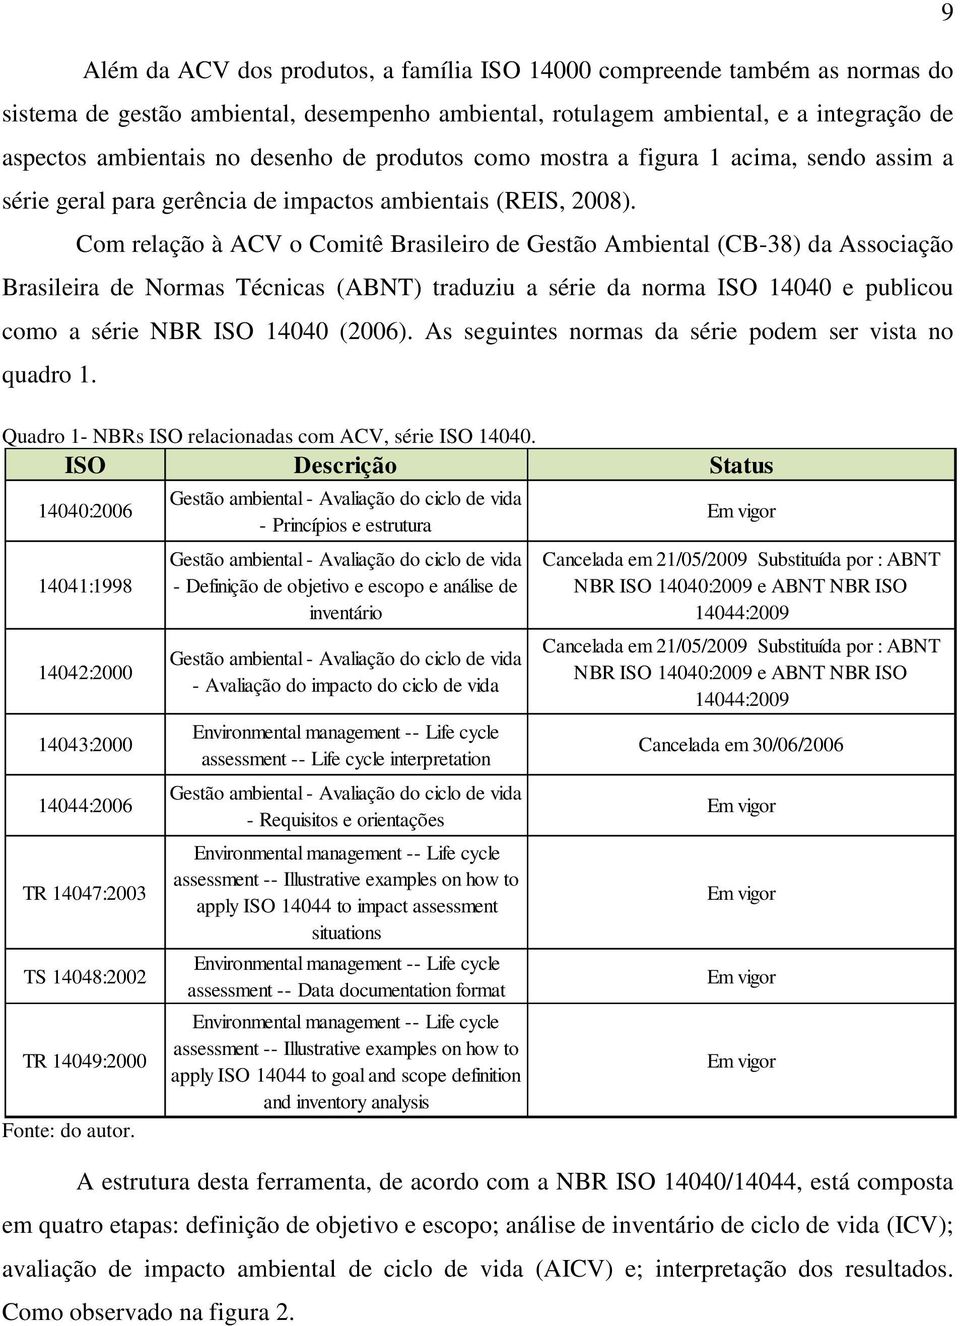 Com relação à ACV o Comitê Brasileiro de Gestão Ambiental (CB-38) da Associação Brasileira de Normas Técnicas (ABNT) traduziu a série da norma ISO 14040 e publicou como a série NBR ISO 14040 (2006).